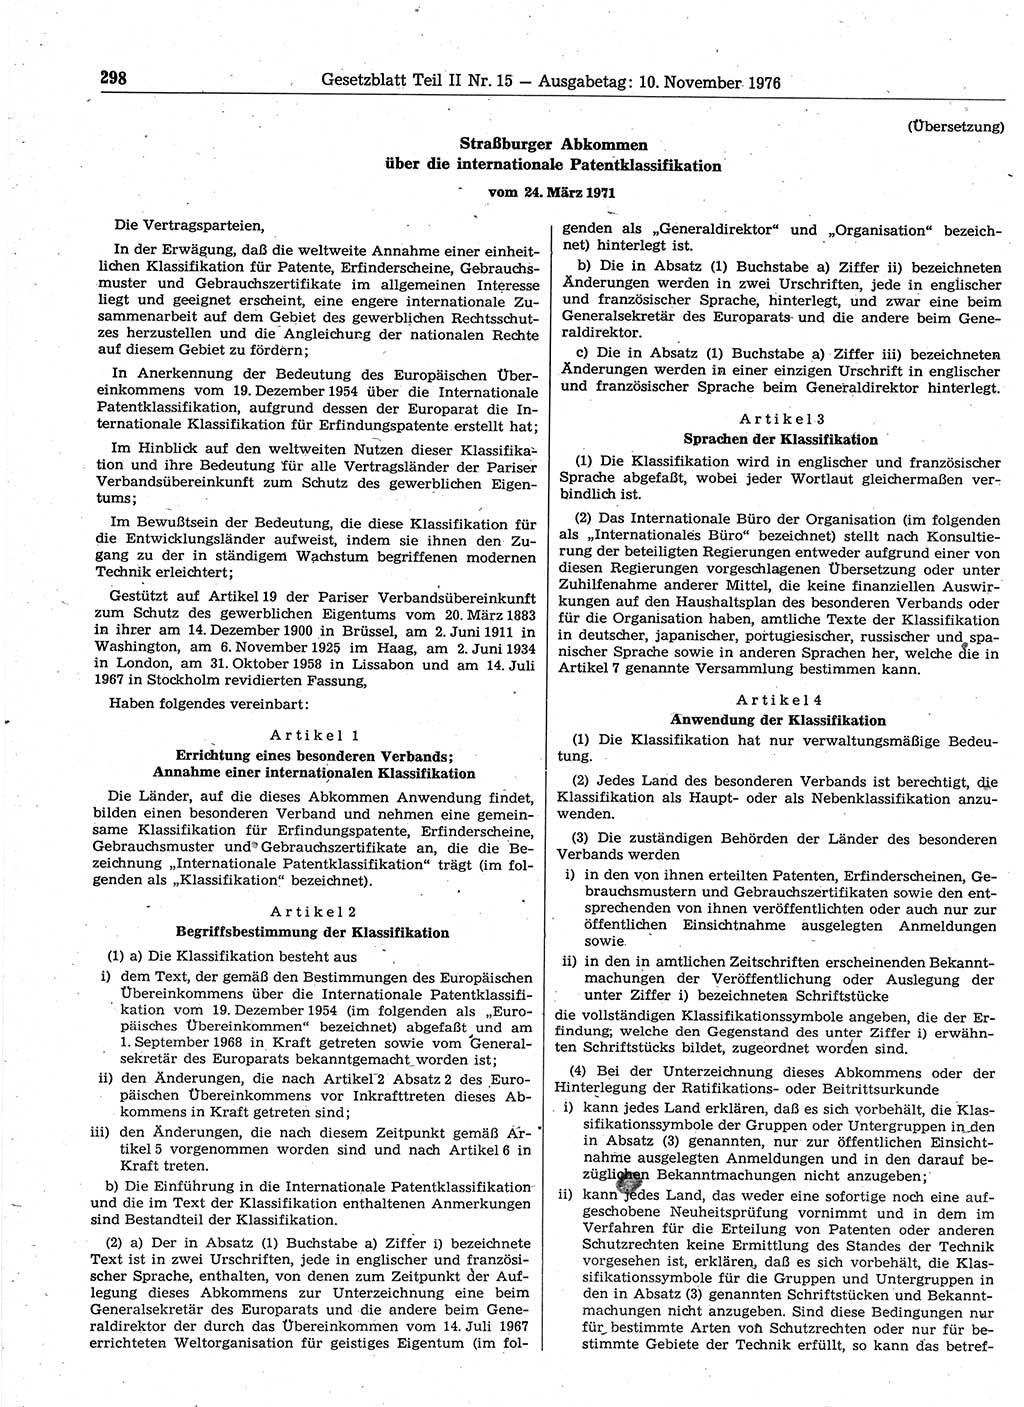 Gesetzblatt (GBl.) der Deutschen Demokratischen Republik (DDR) Teil ⅠⅠ 1976, Seite 298 (GBl. DDR ⅠⅠ 1976, S. 298)